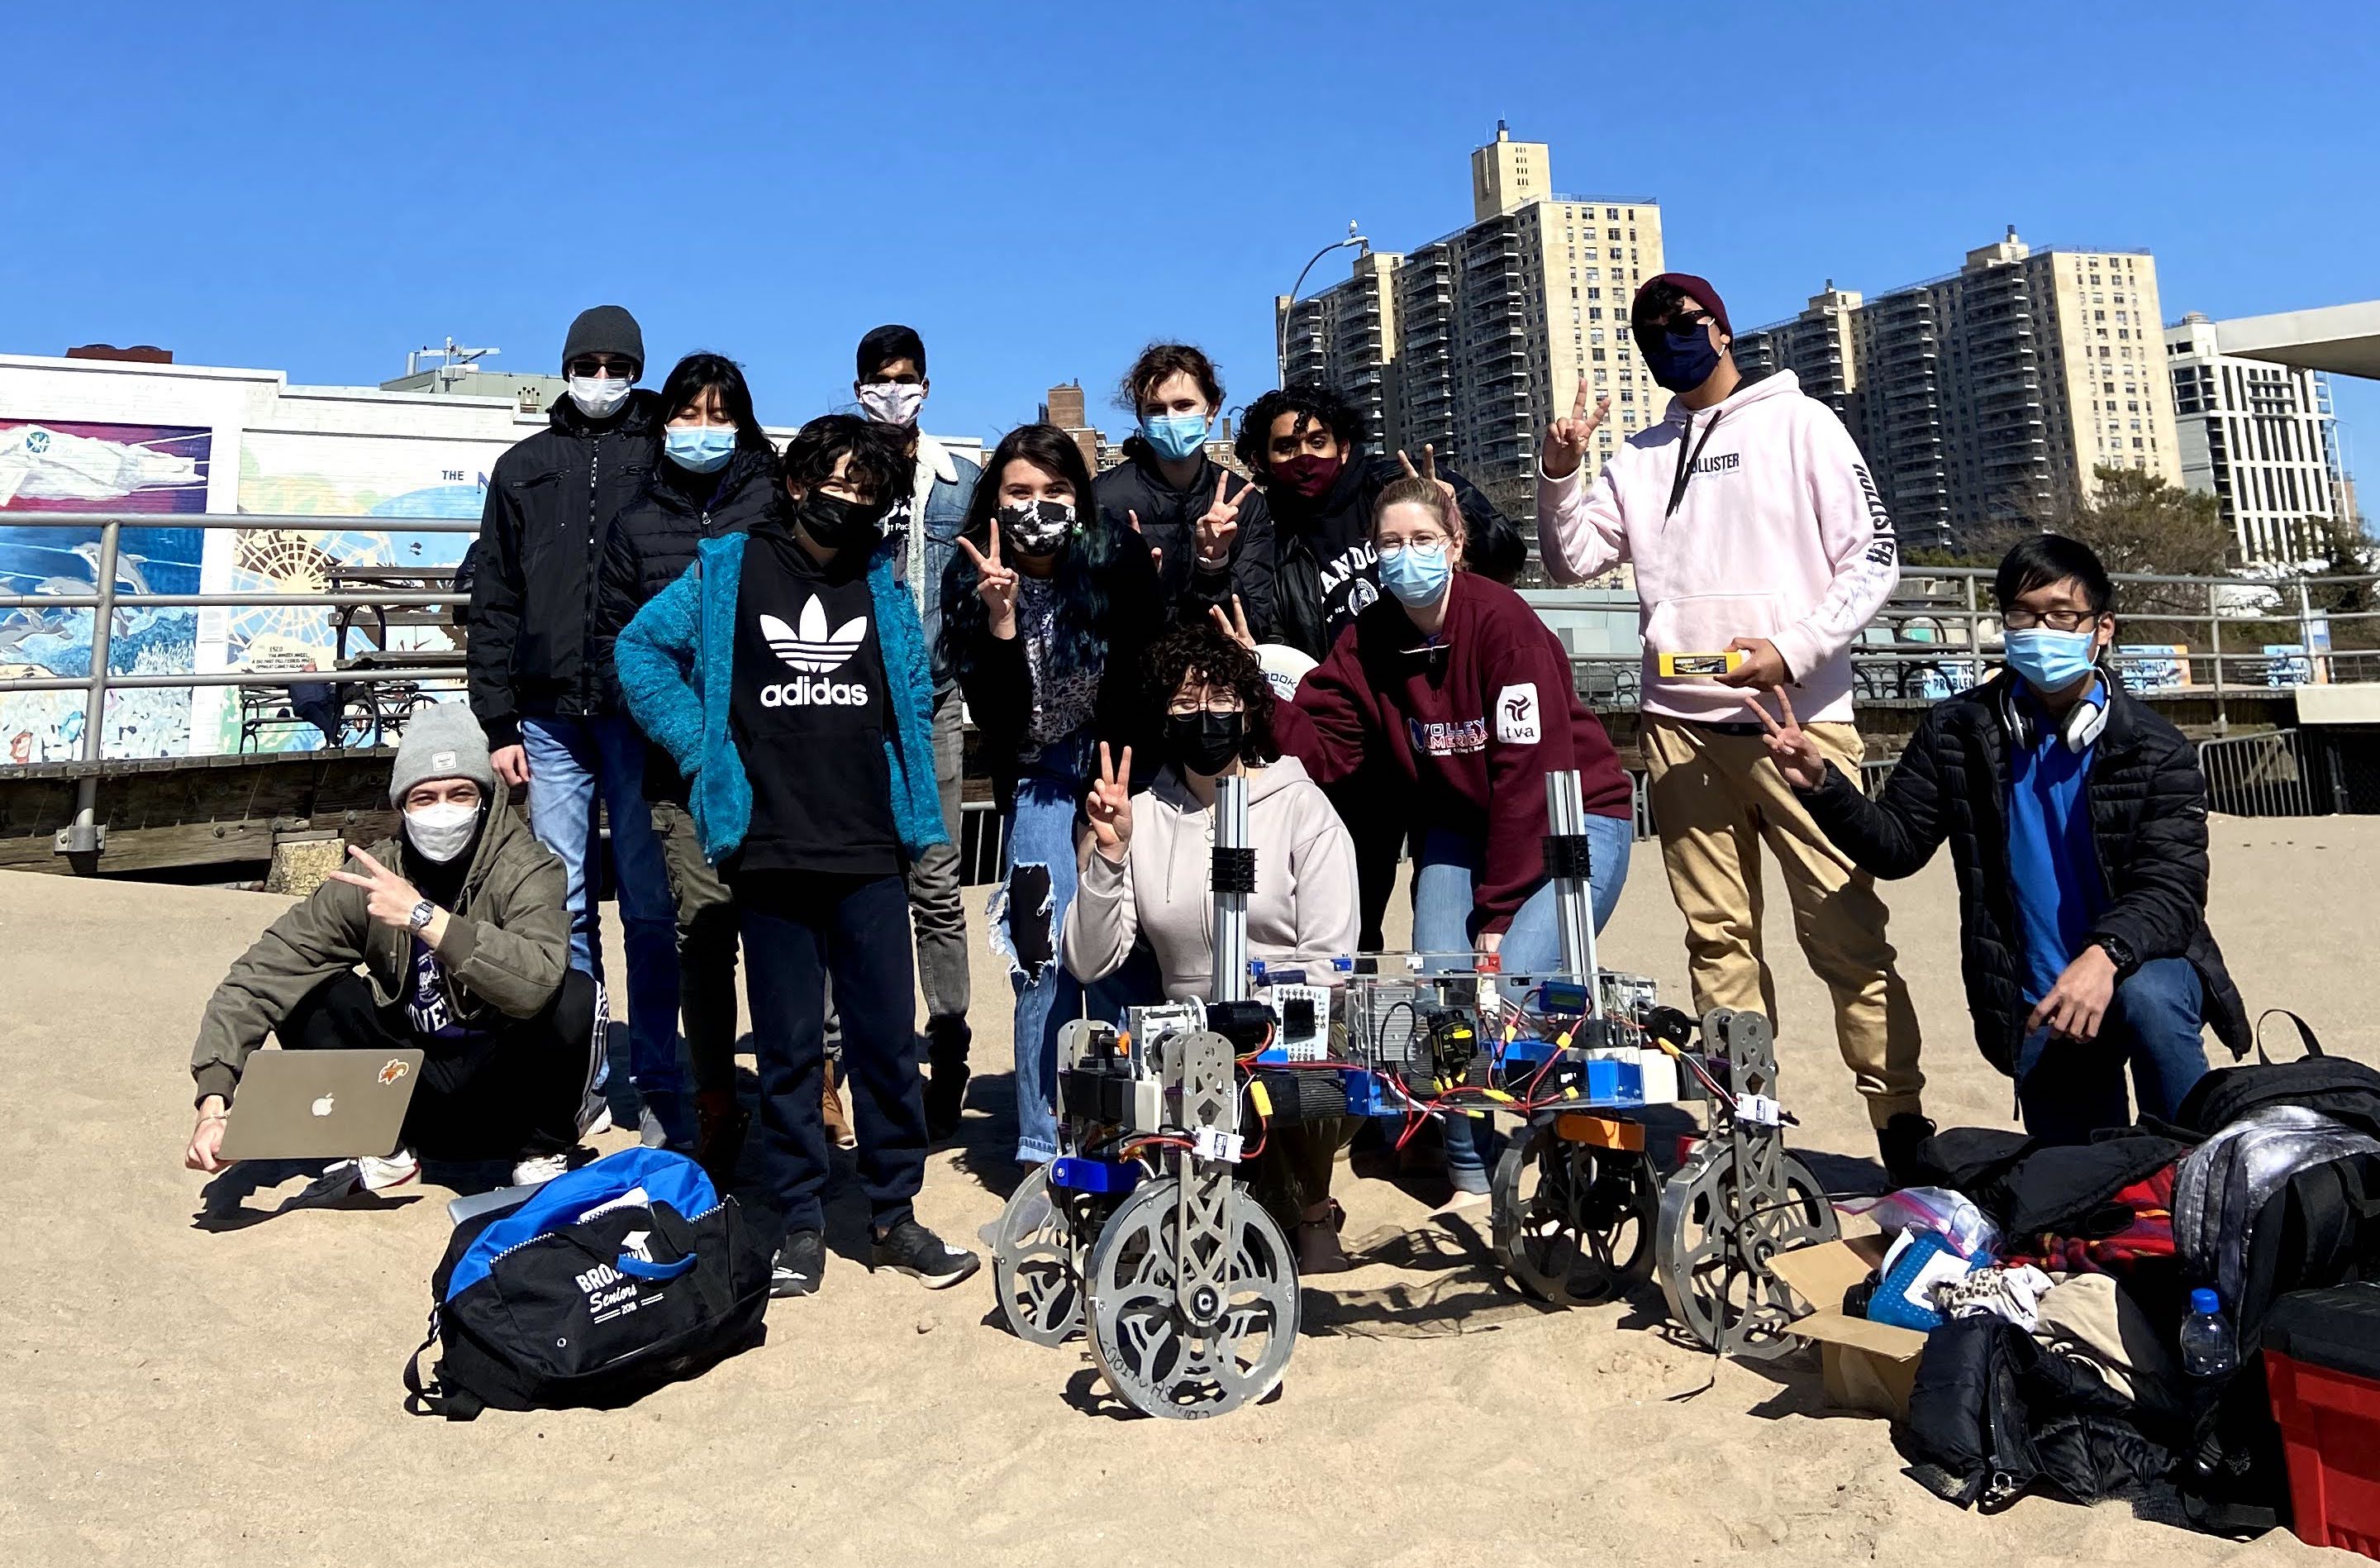 The robotics team on the beach with their Mars rover